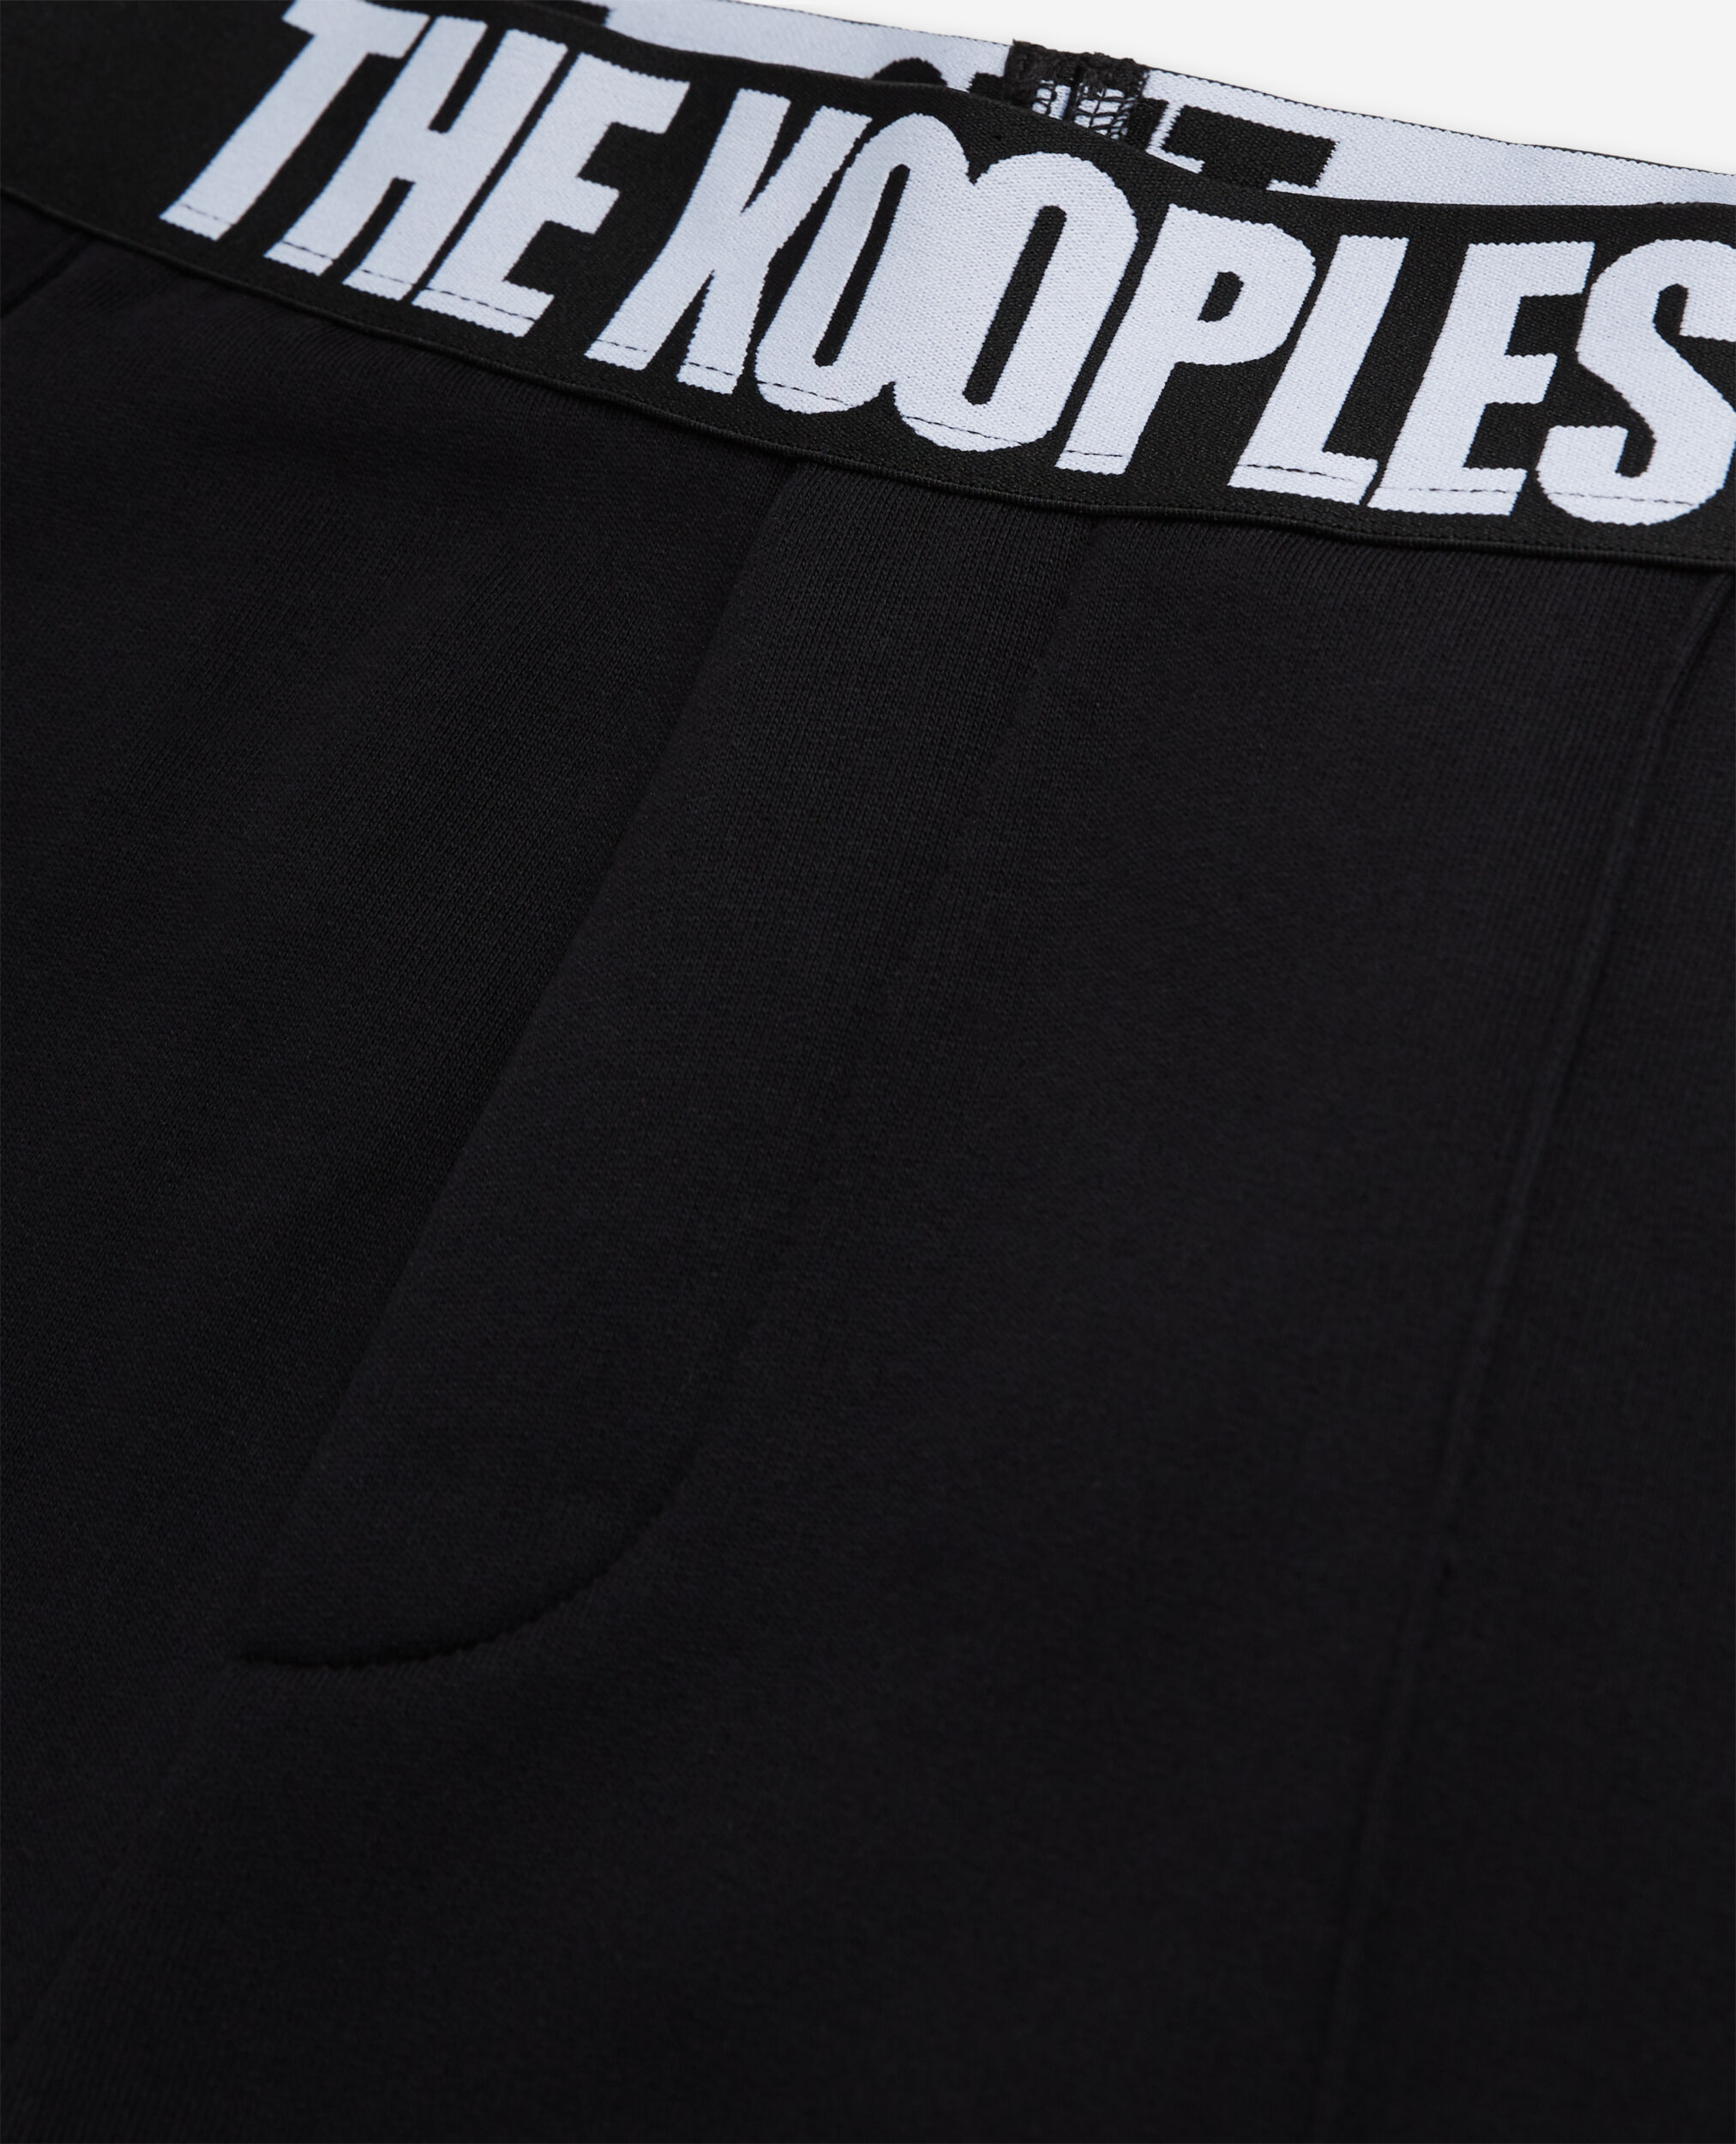 Pantalon logo The Kooples noir, BLACK, hi-res image number null